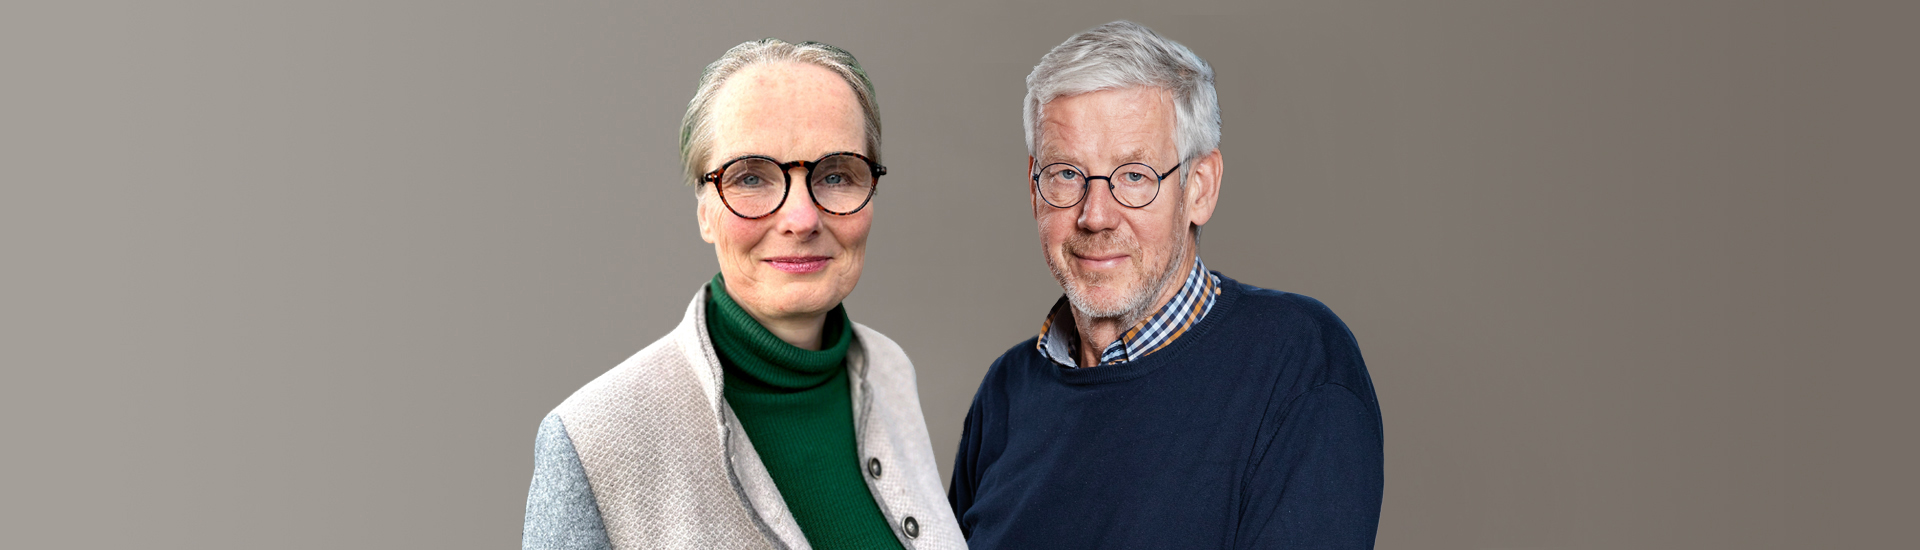 Alzheimer en leefstijl - Martine Geurts en Ben van Ommen